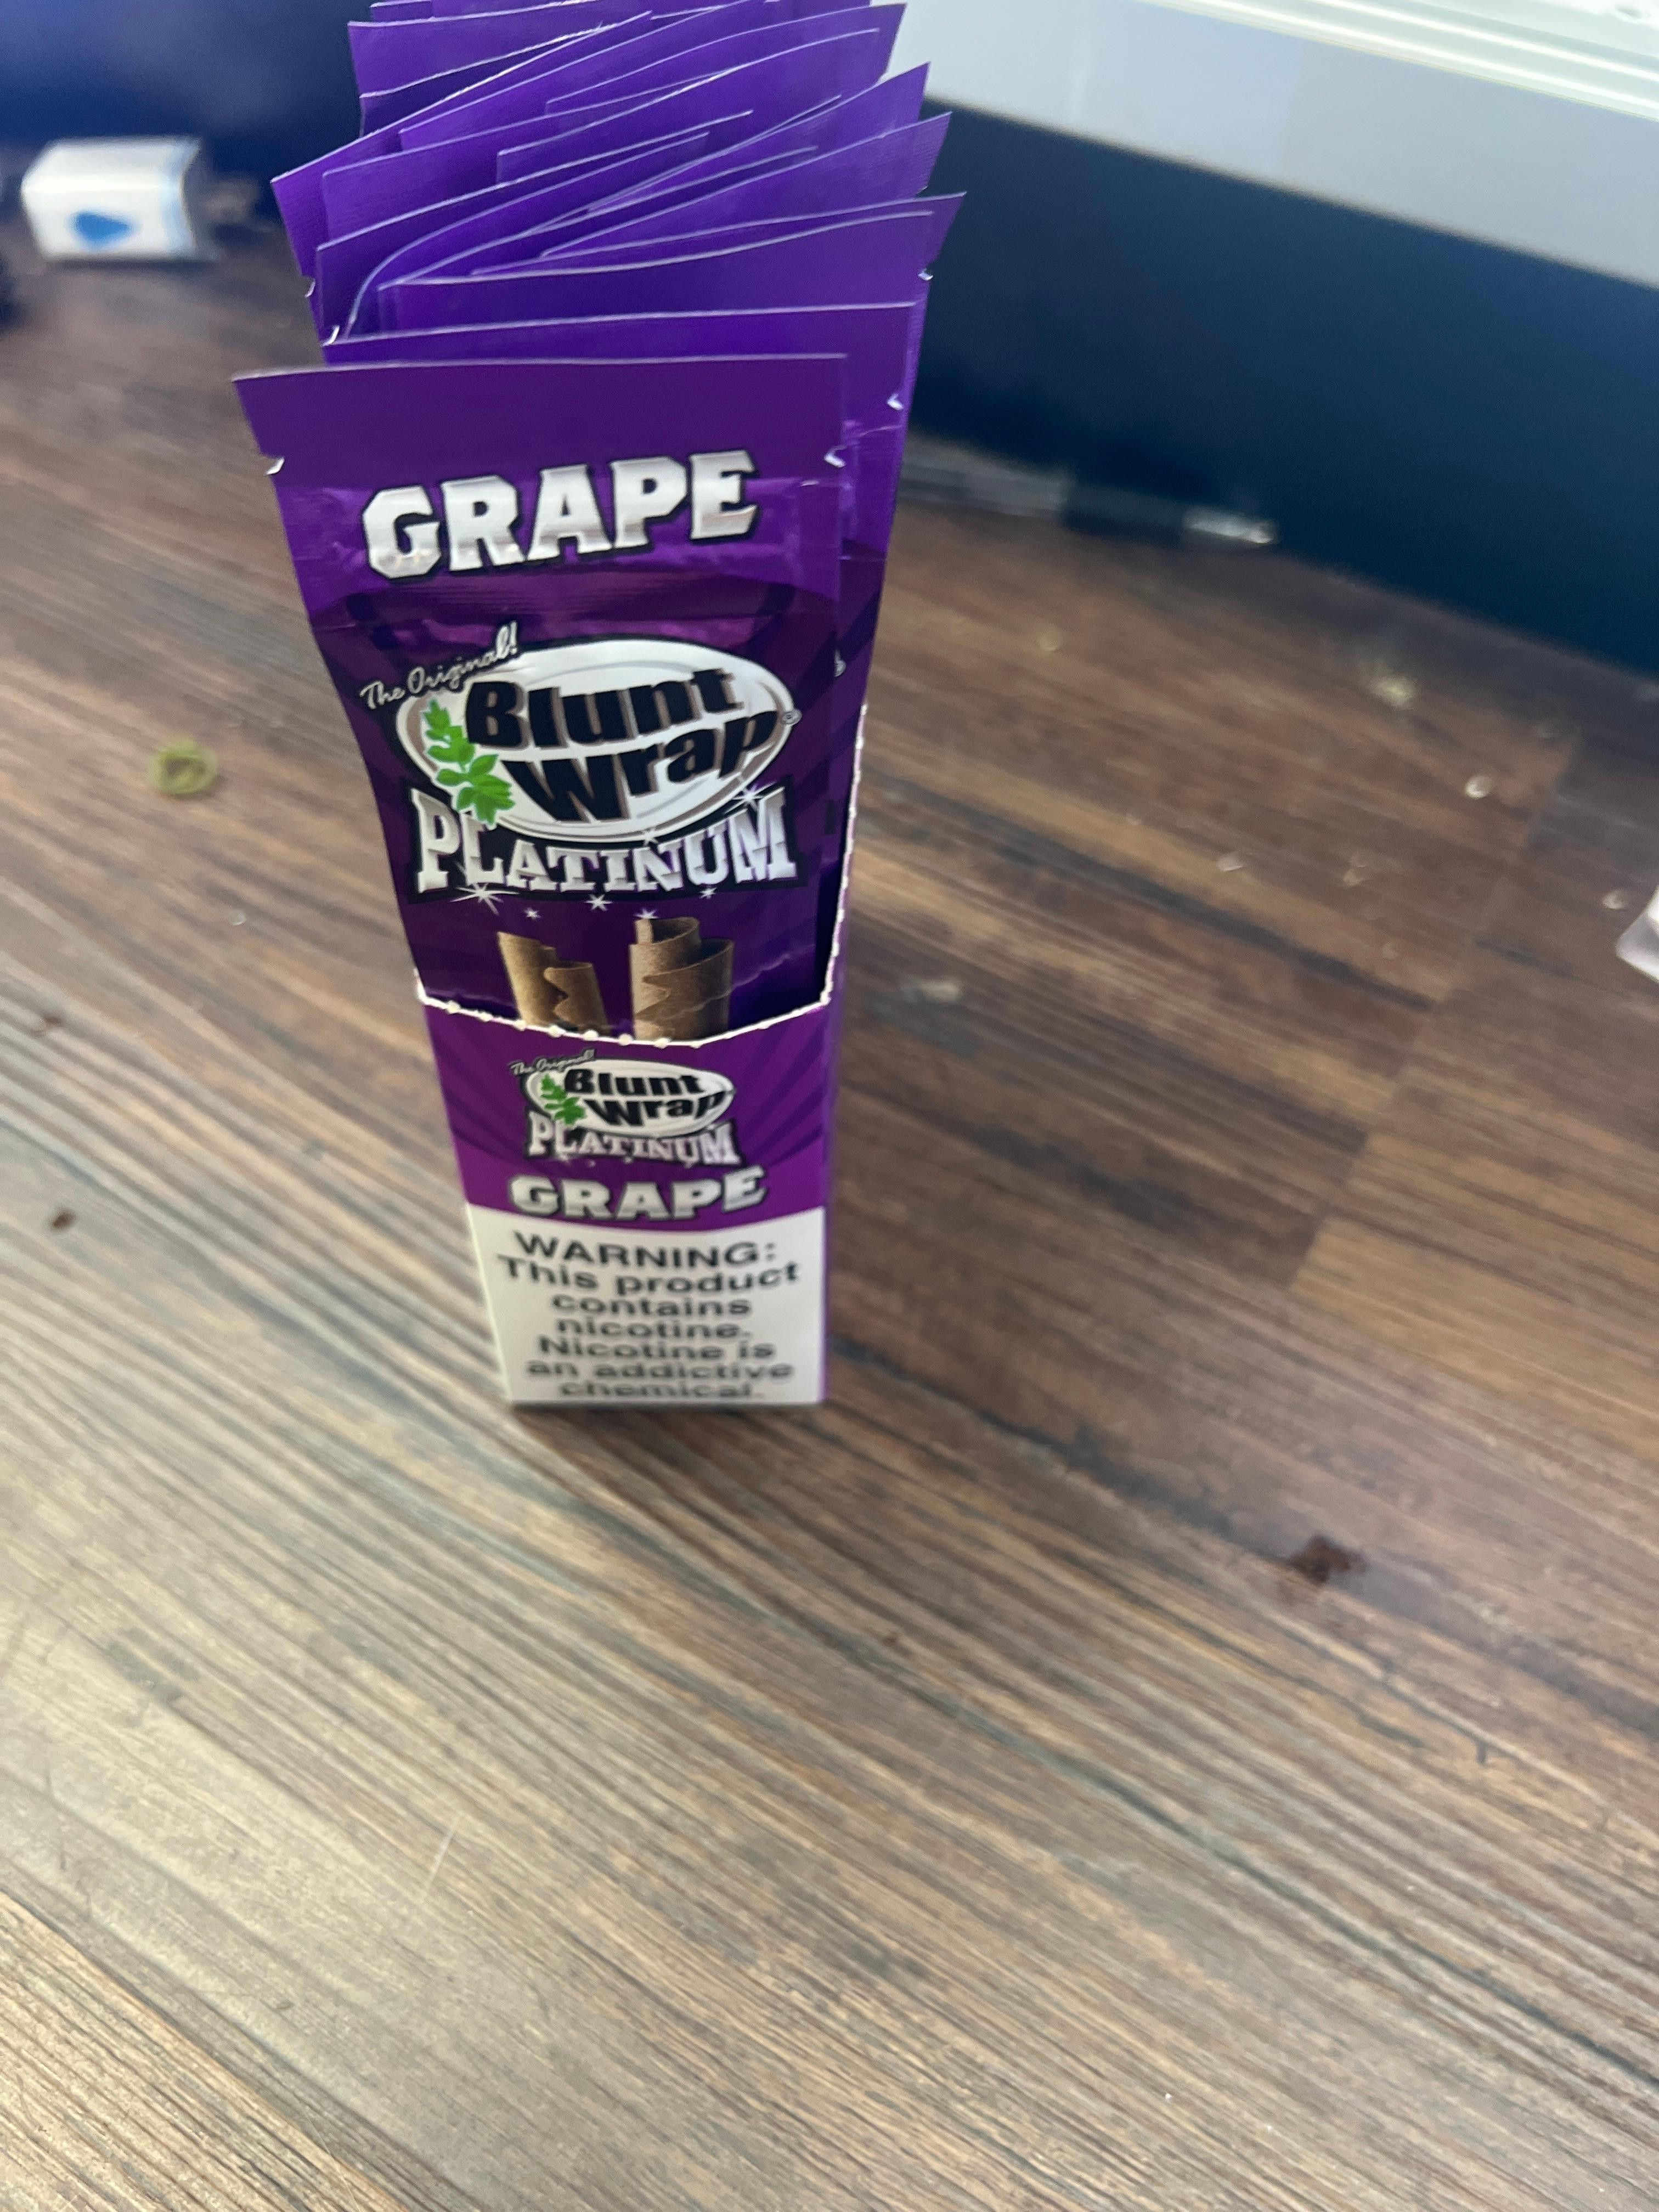 Blunt Wrap Platinum Grape